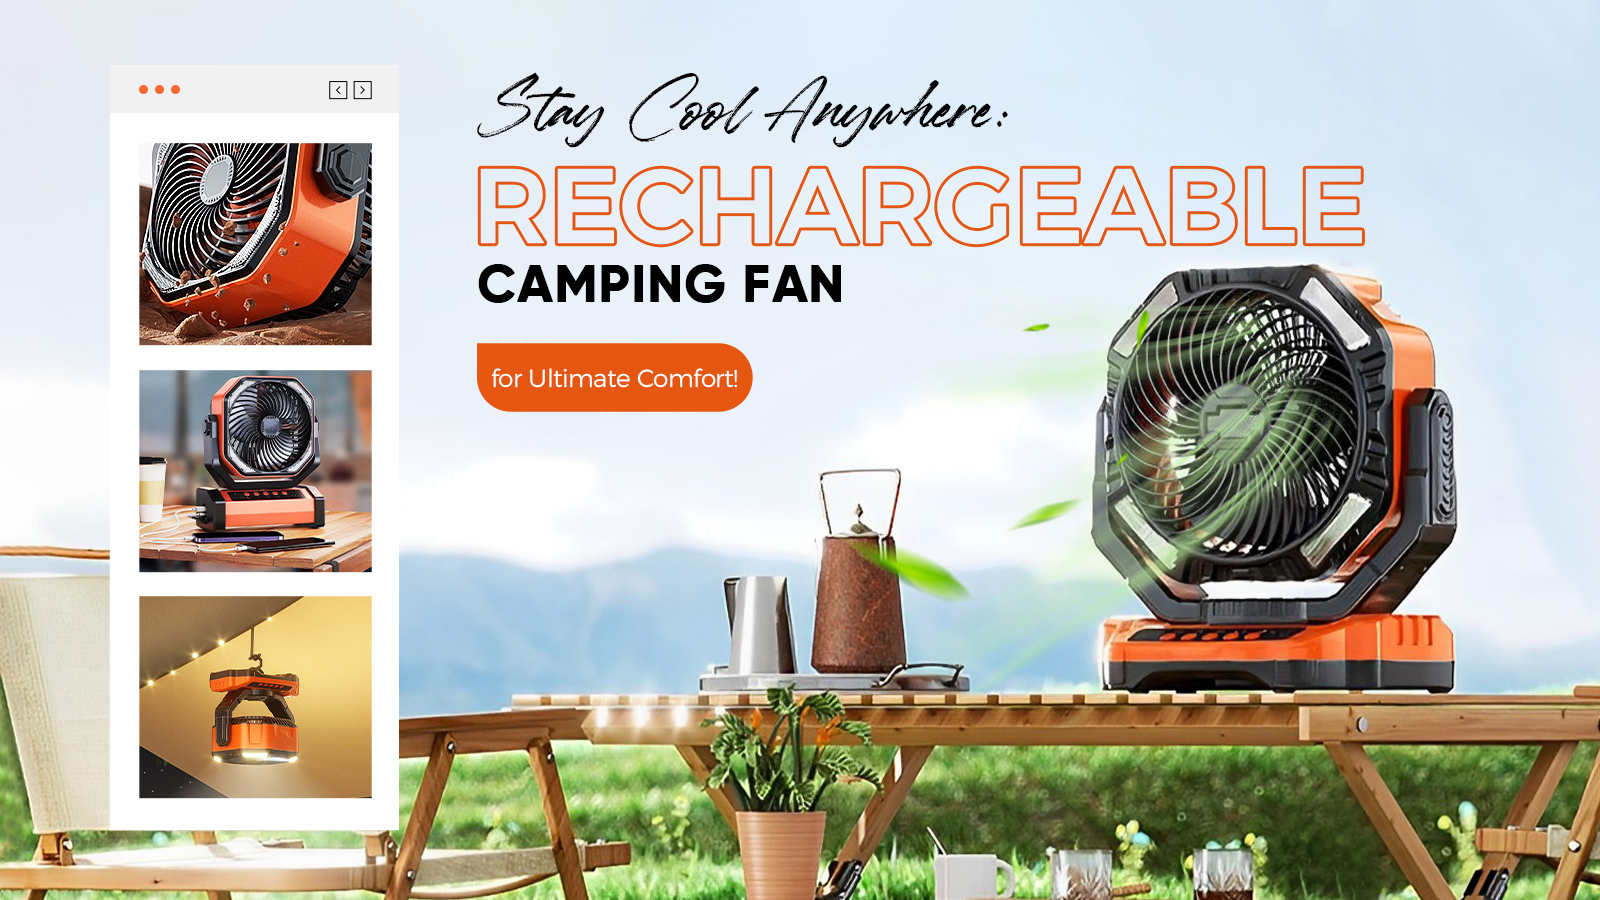 SAKER® Rechargeable Camping Fan